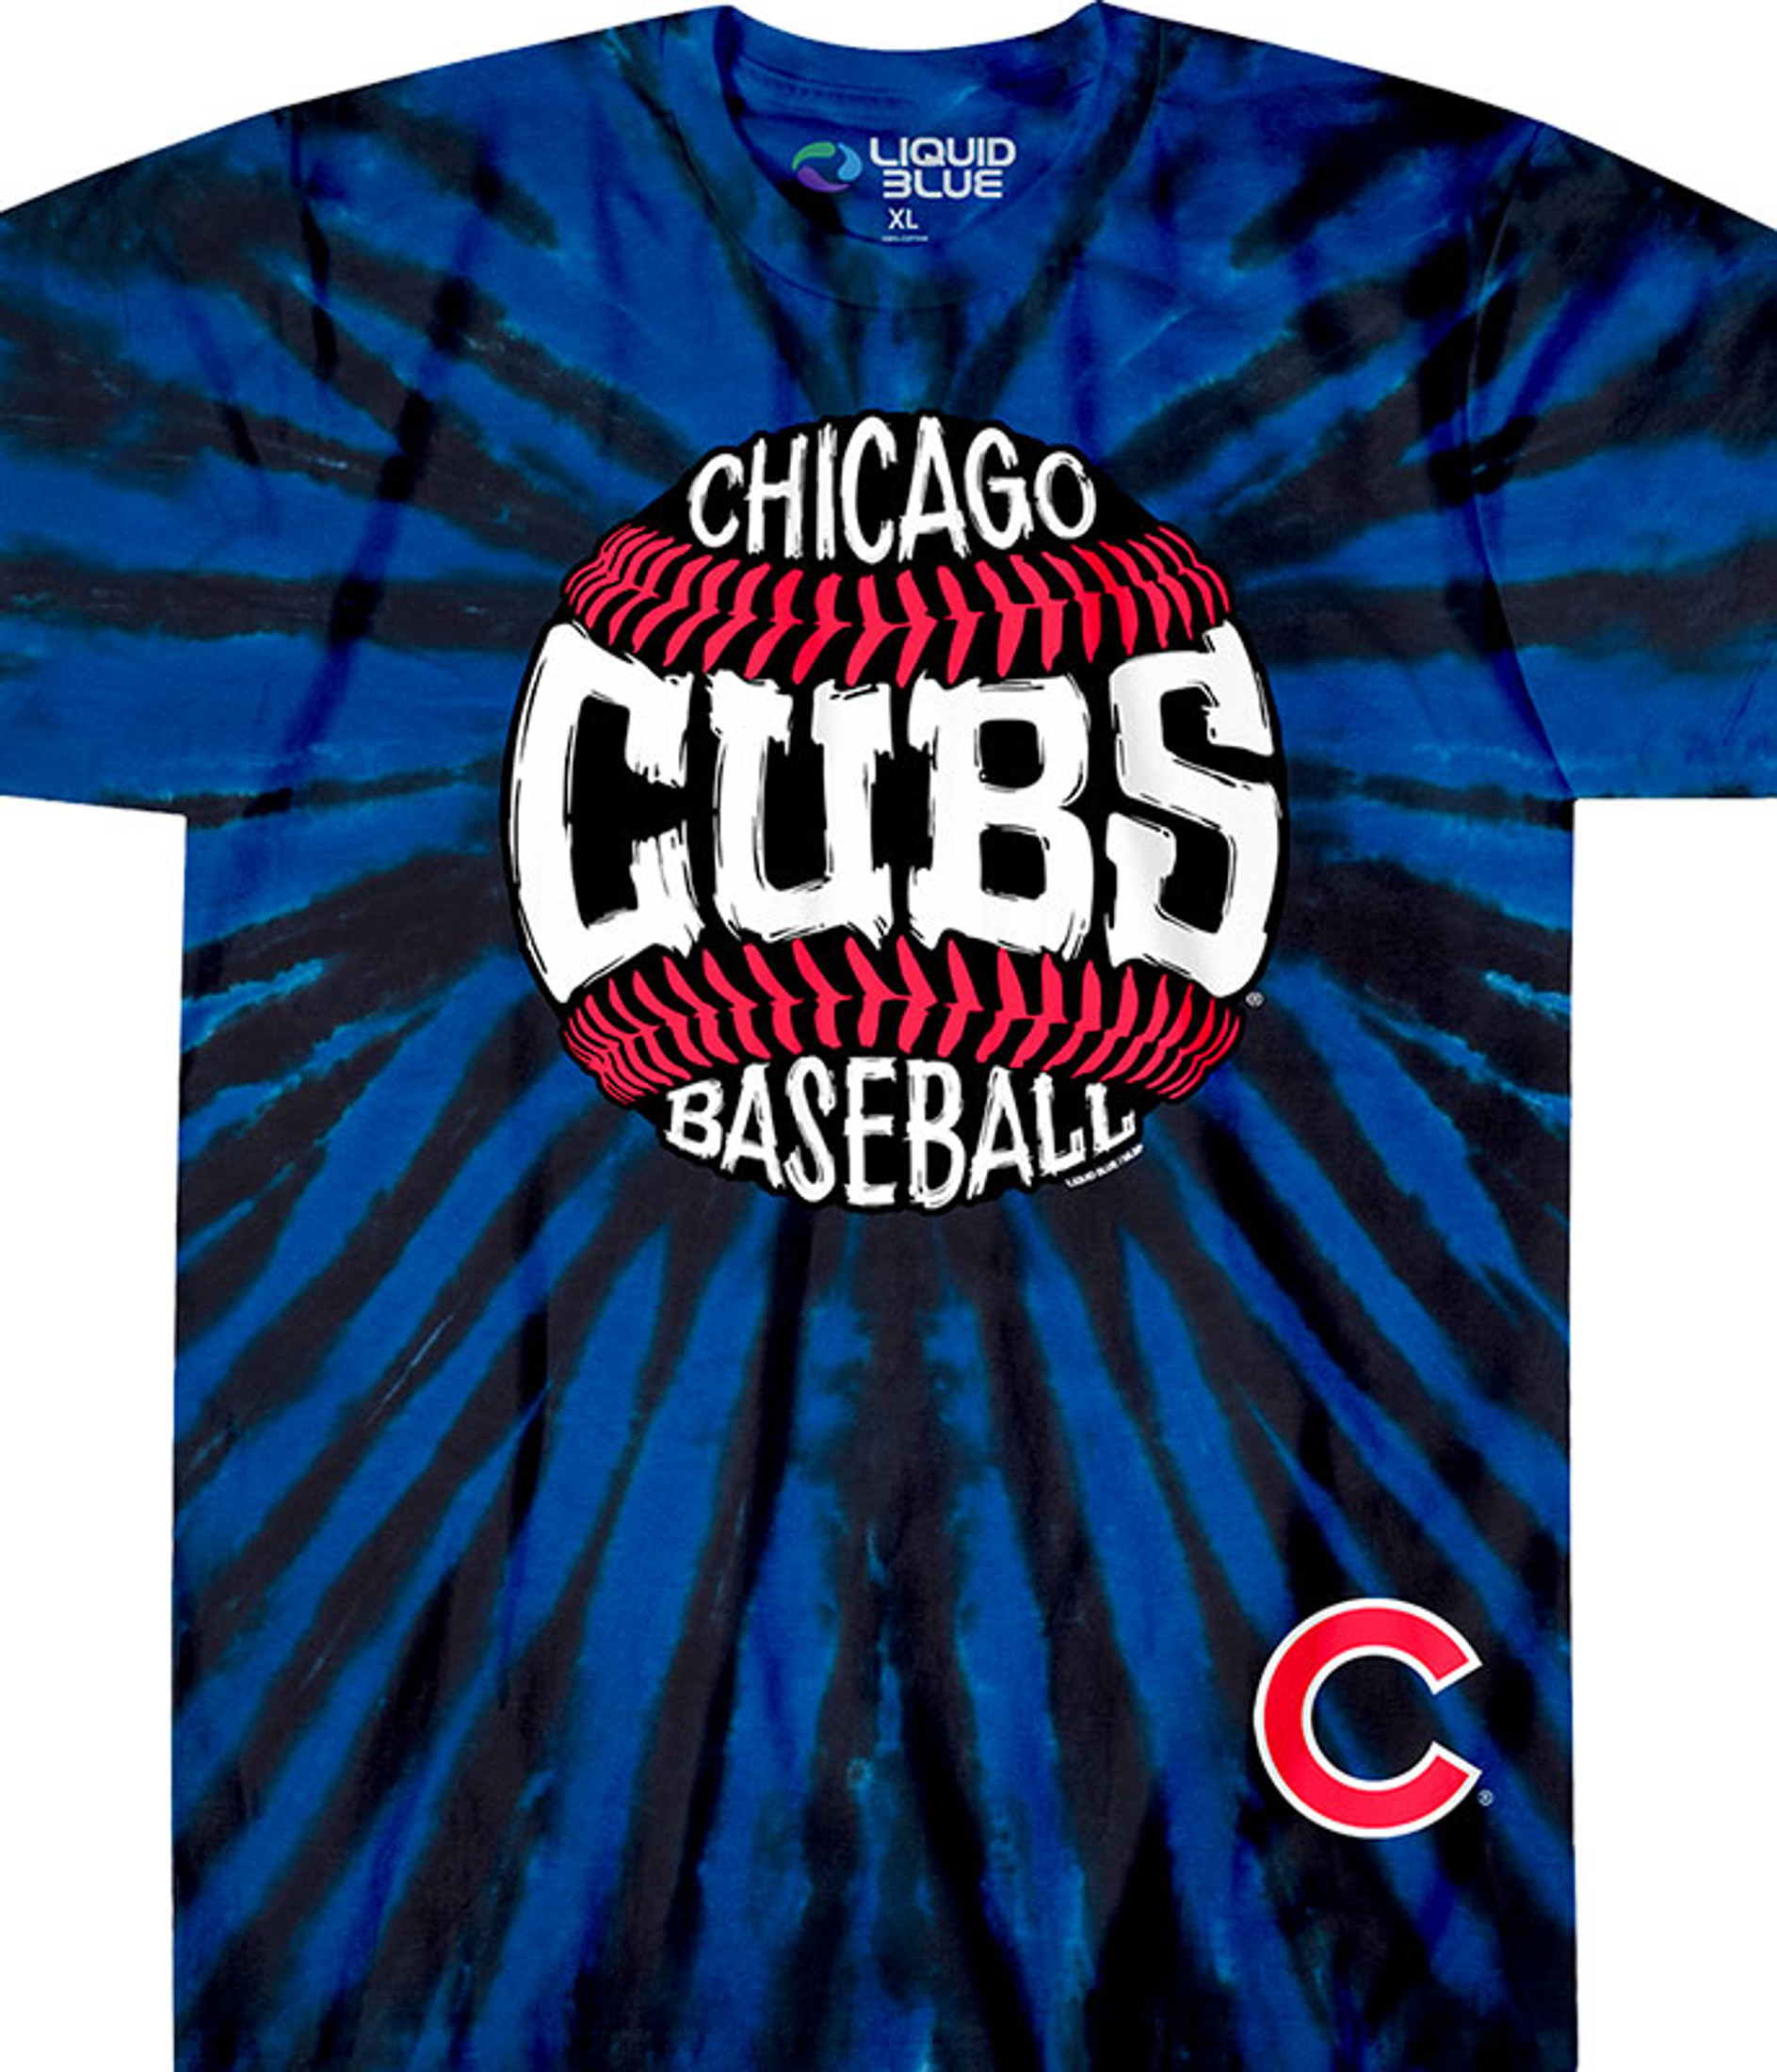 cubs baseball t shirt